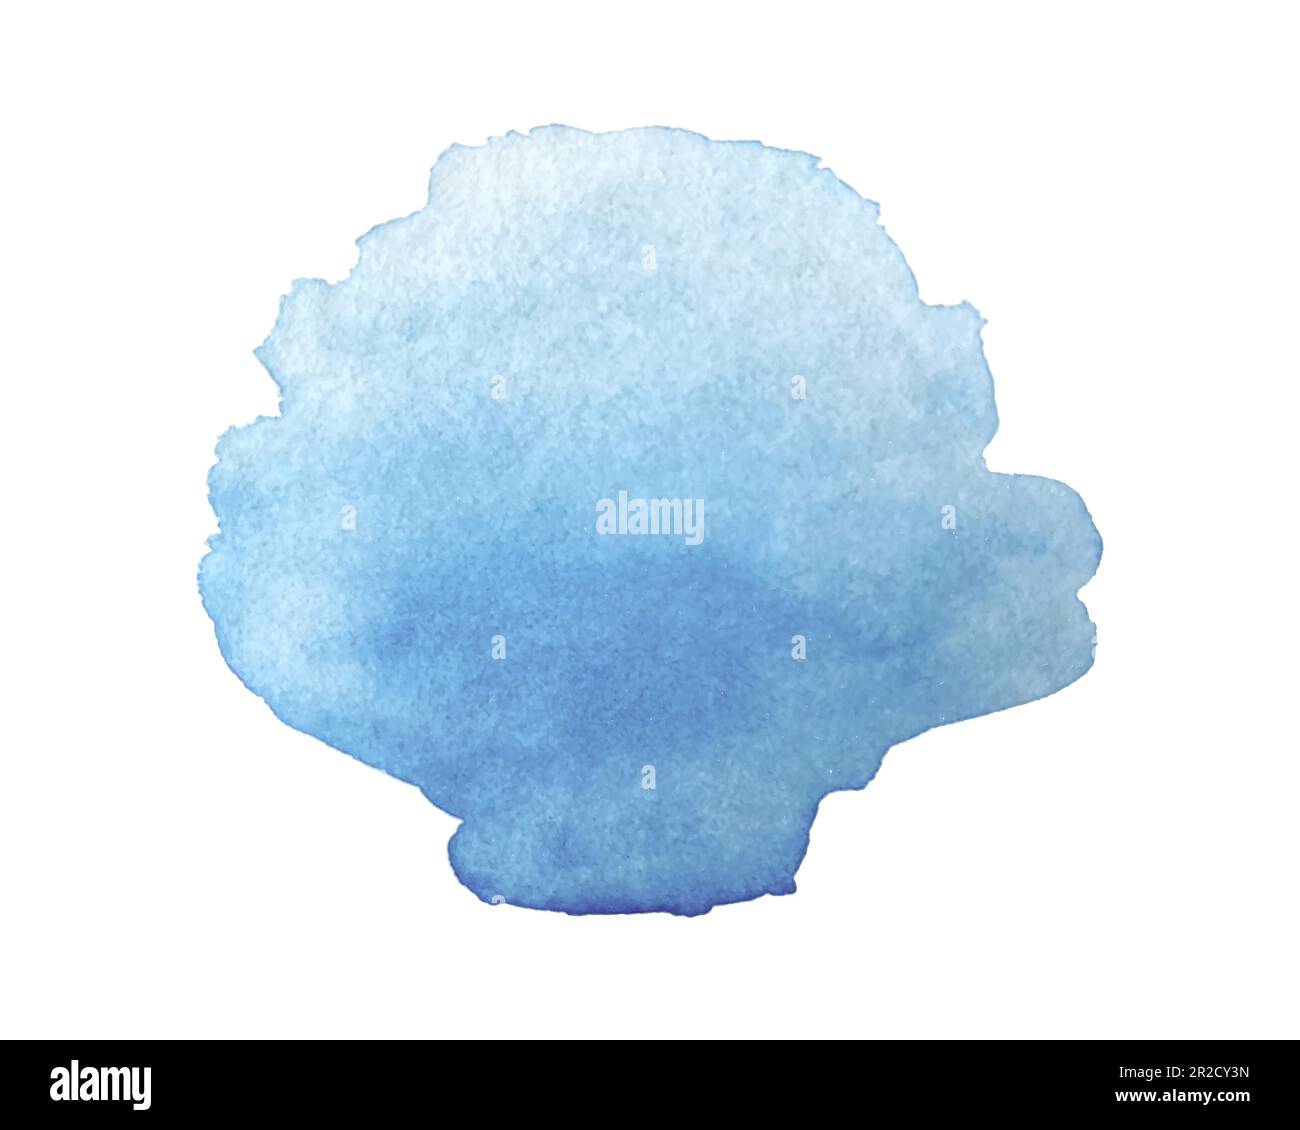 Acquerello blu stract splash texture isolato su sfondo bianco. Illustrazione vettoriale Illustrazione Vettoriale